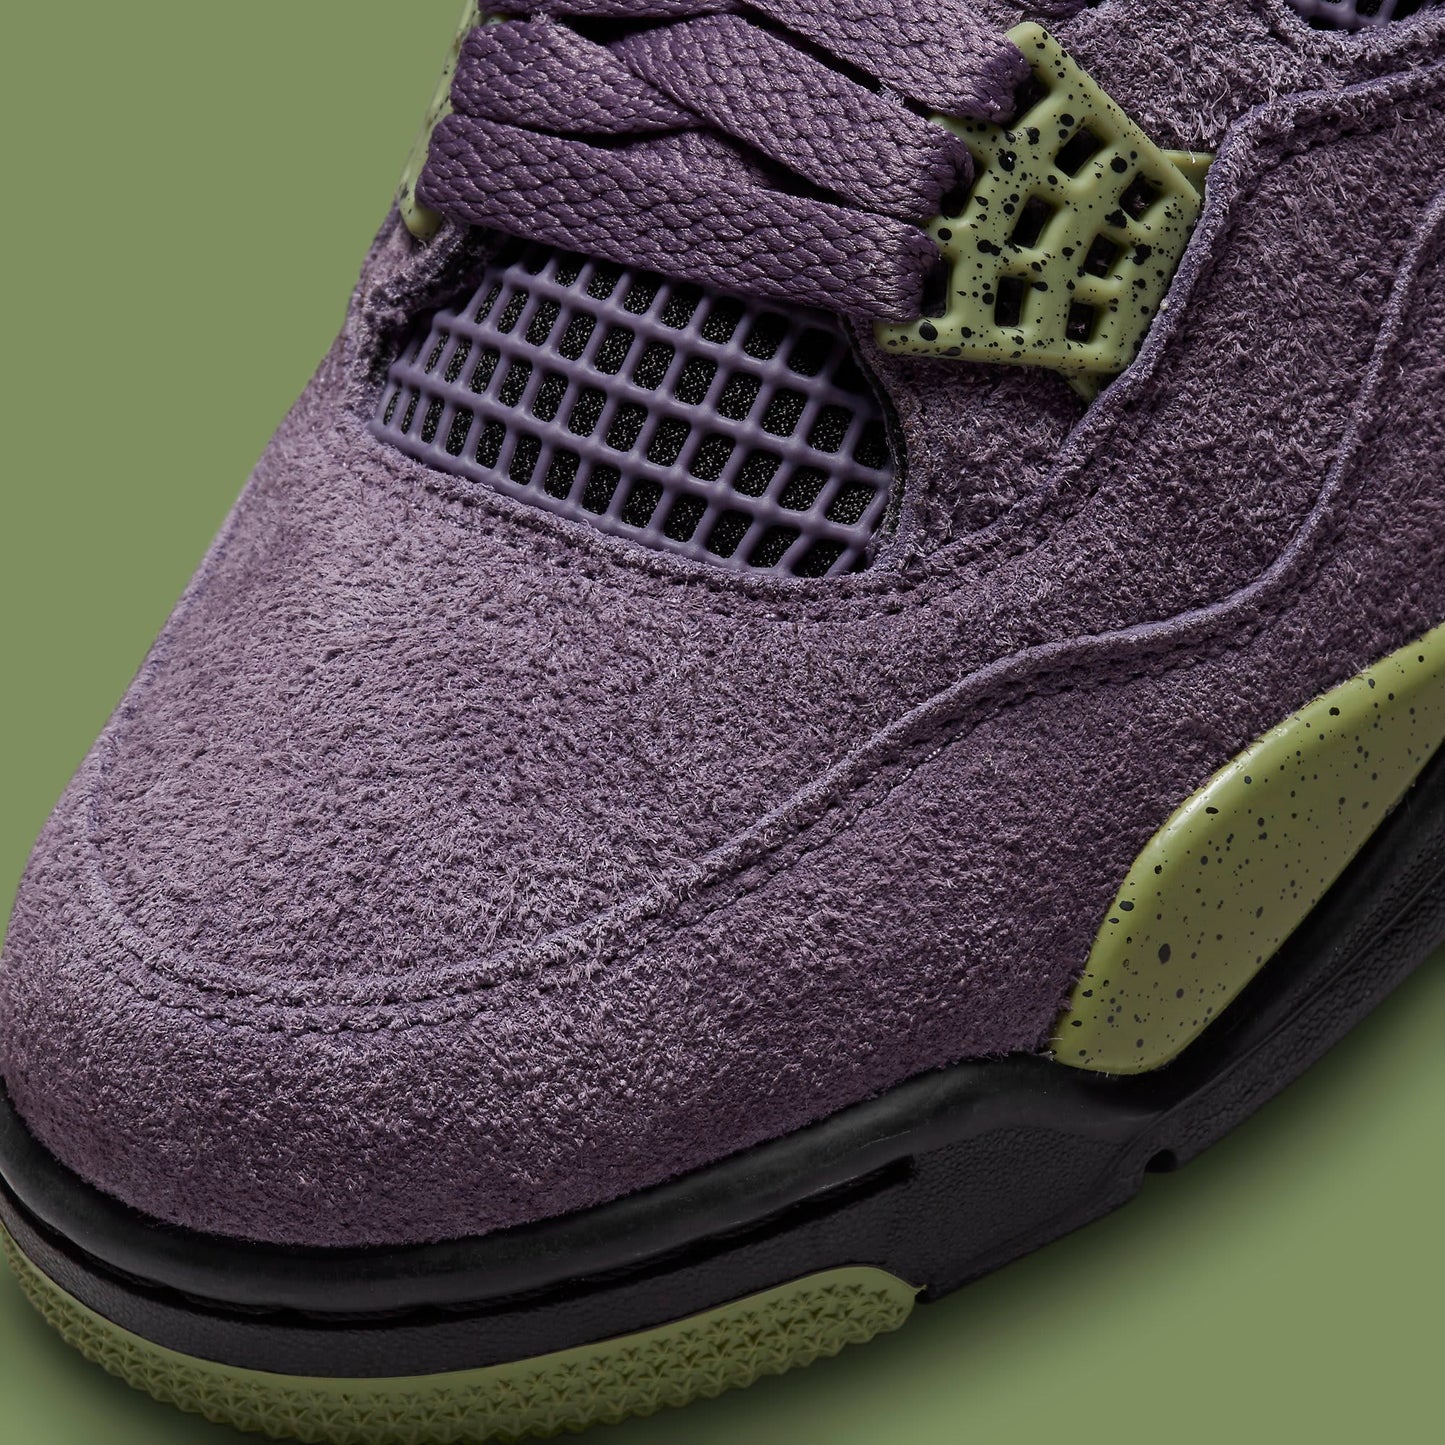 Air Jordan 4 "Canyon purple" (WMNS)